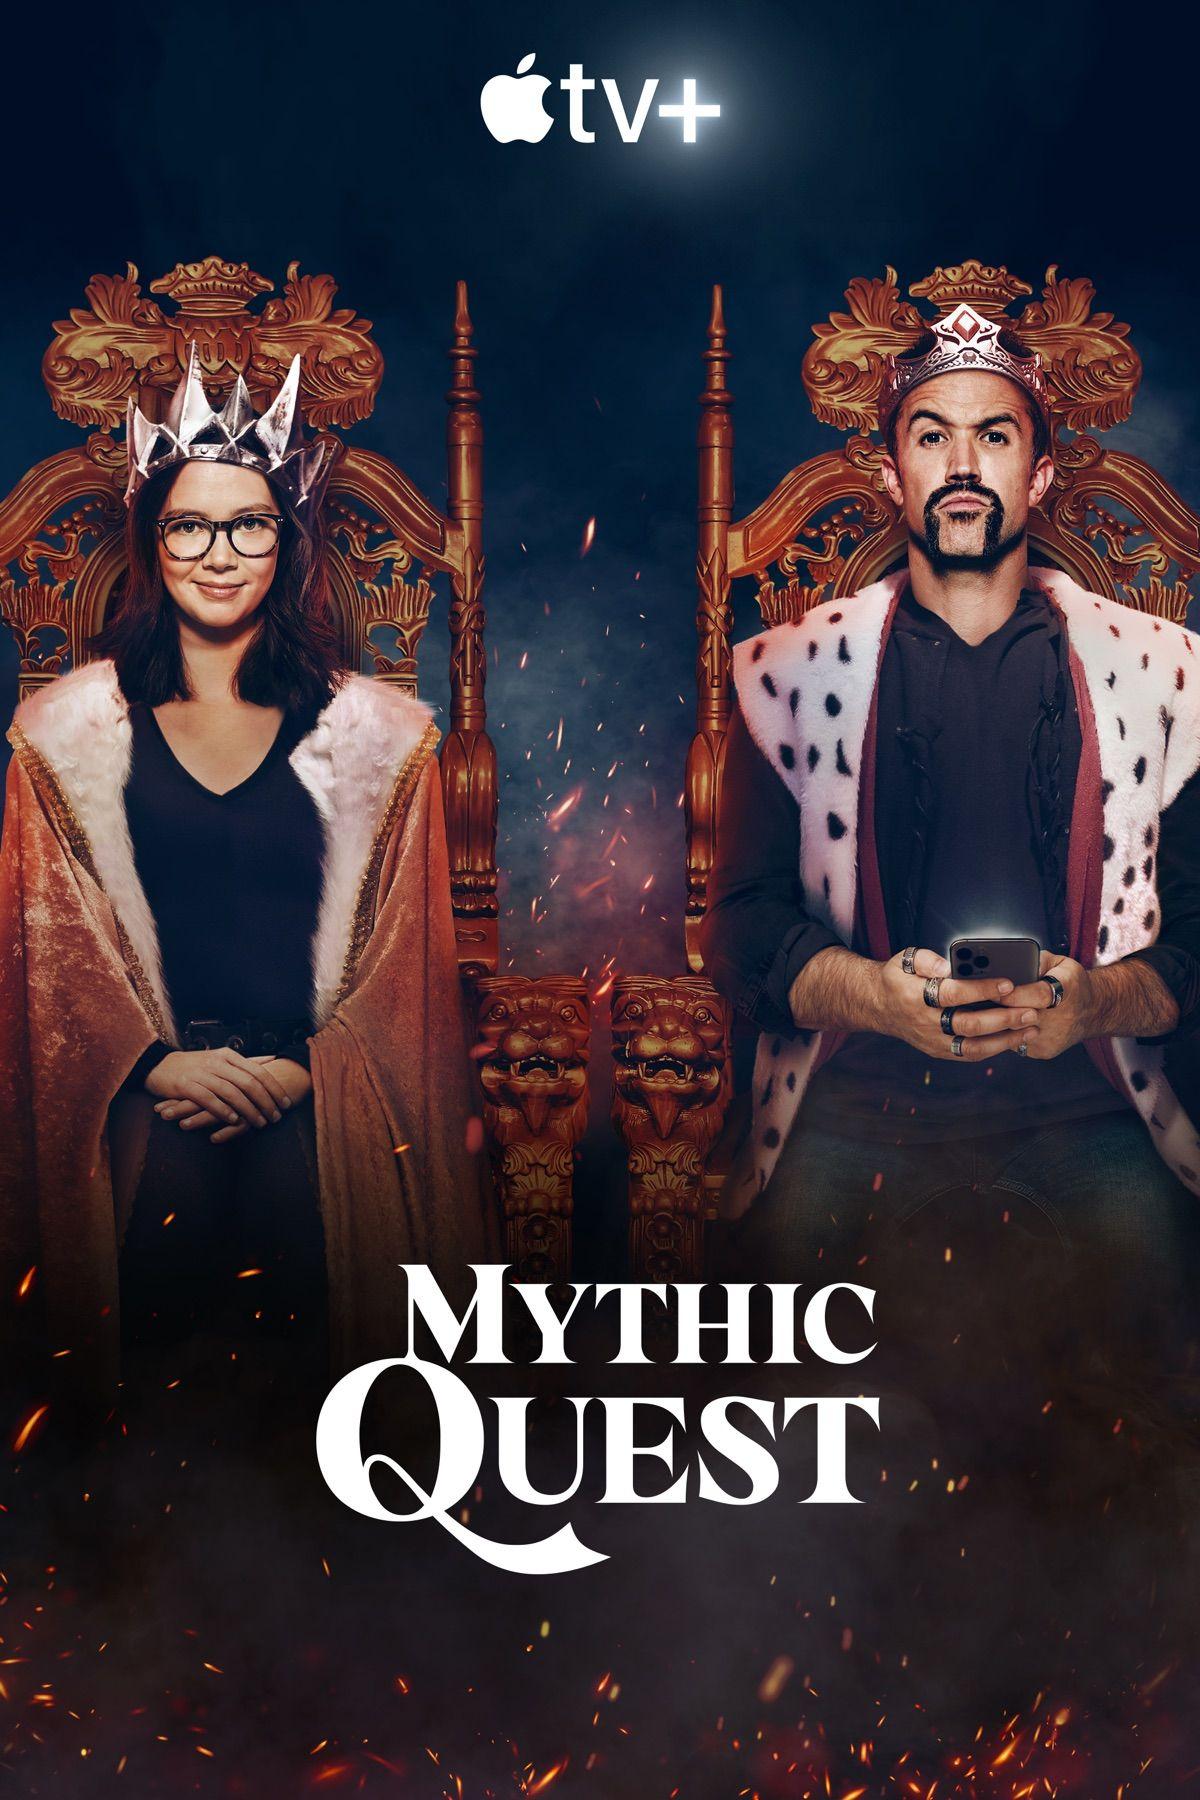 Постер фильма Мистический квест: Пир ворона | Mythic Quest: Raven's Banquet